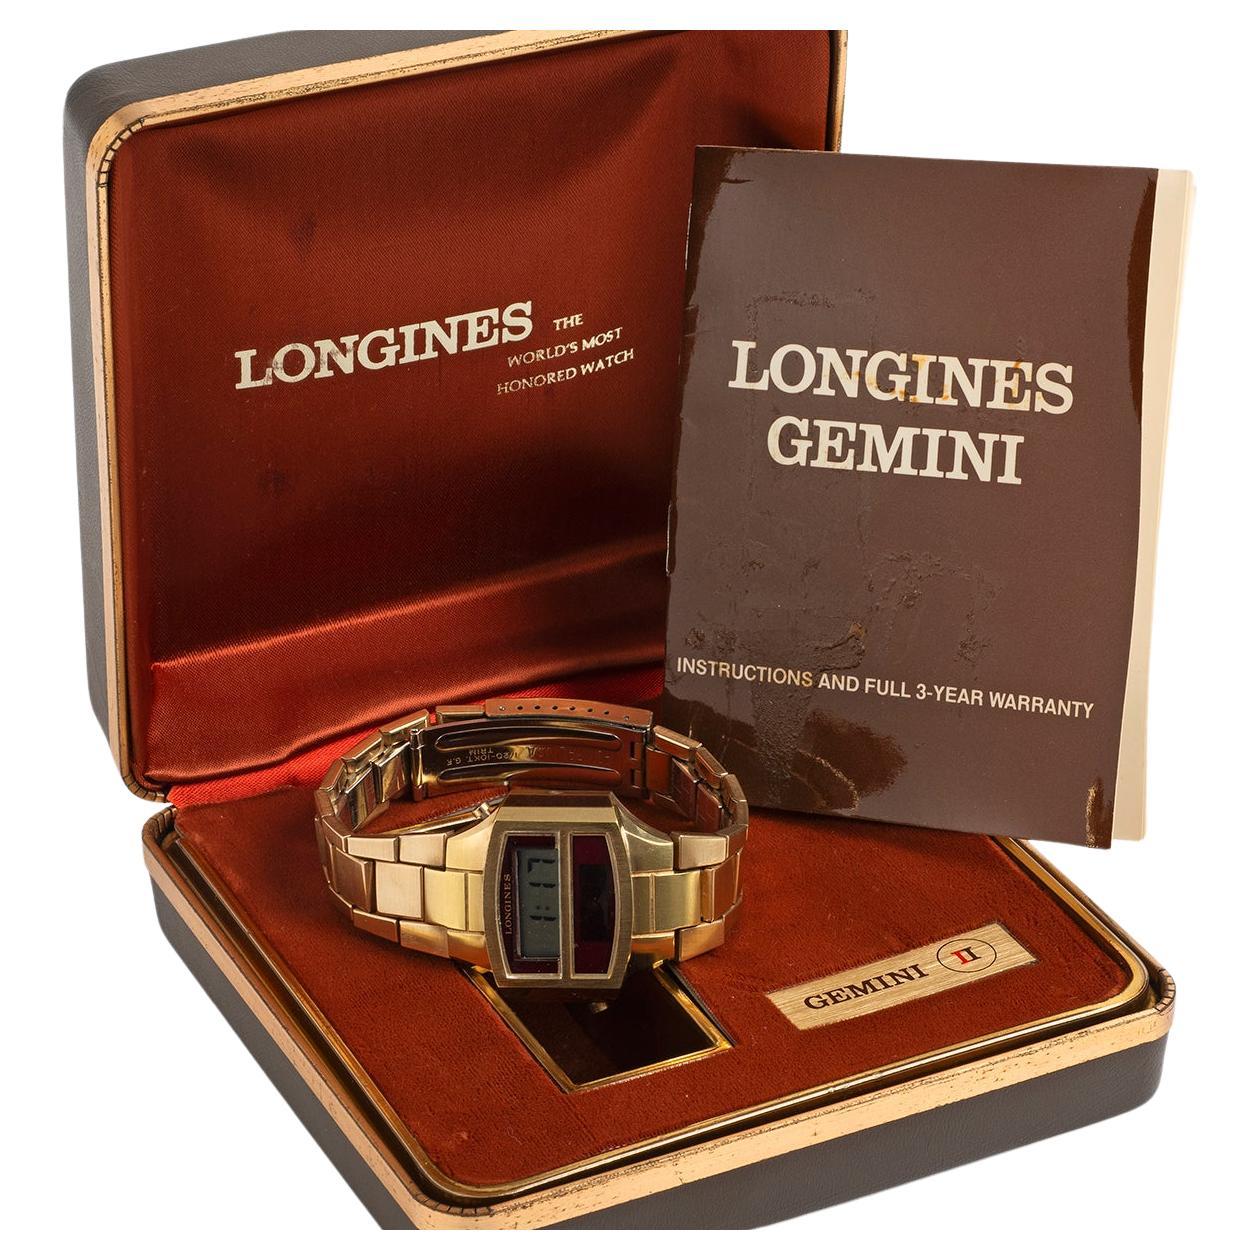 Unsere extrem seltene und vollständige Longines Gemini II verfügt über ein 35,4 mm großes Gehäuse und ein Armband aus schwerem, vergoldetem Stahl. Die Gemini von Longines war die erste Uhr, die gleichzeitig eine digitale Zeitanzeige bei Tag und bei